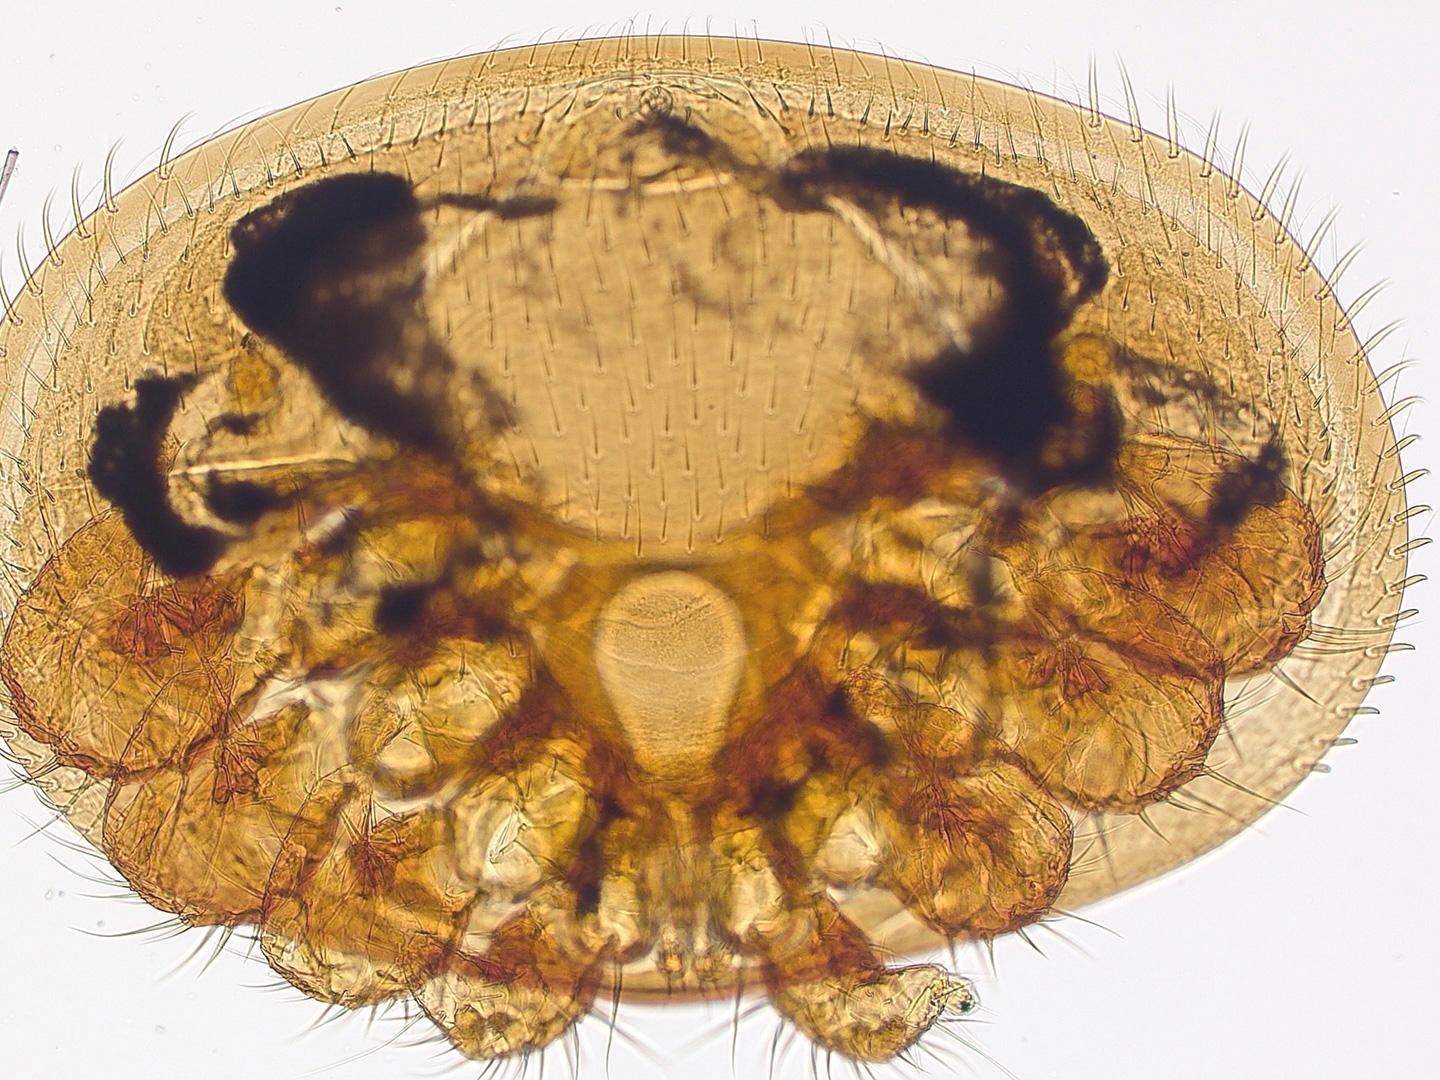 Mite varroa en lumière transmise en champ clair